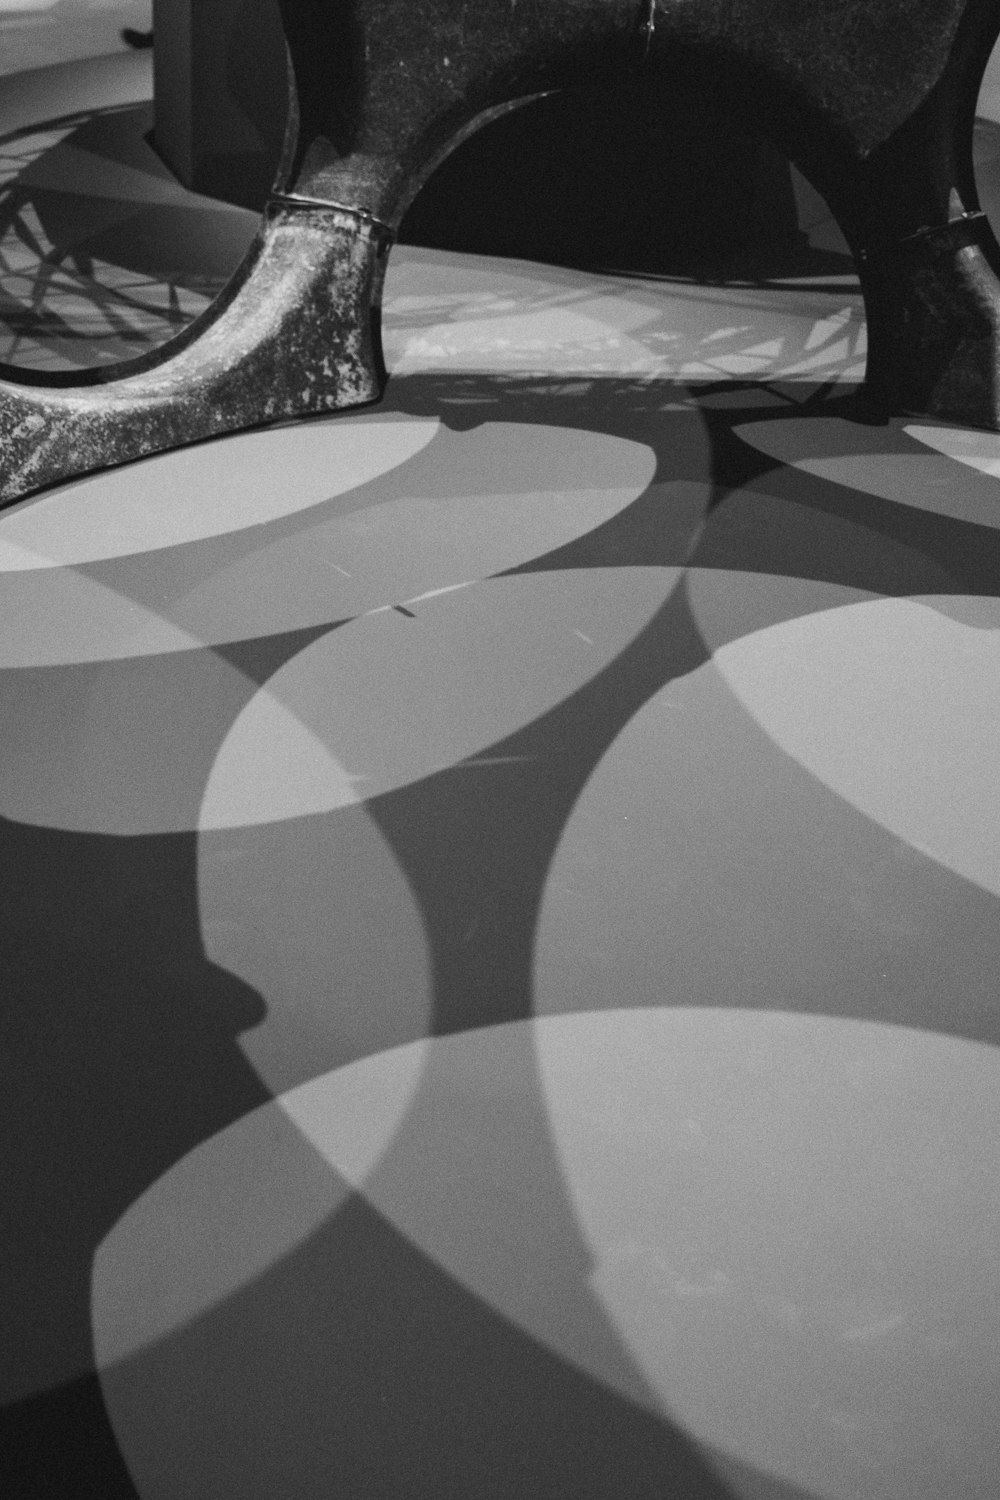 Una foto en blanco y negro de un banco en una habitación